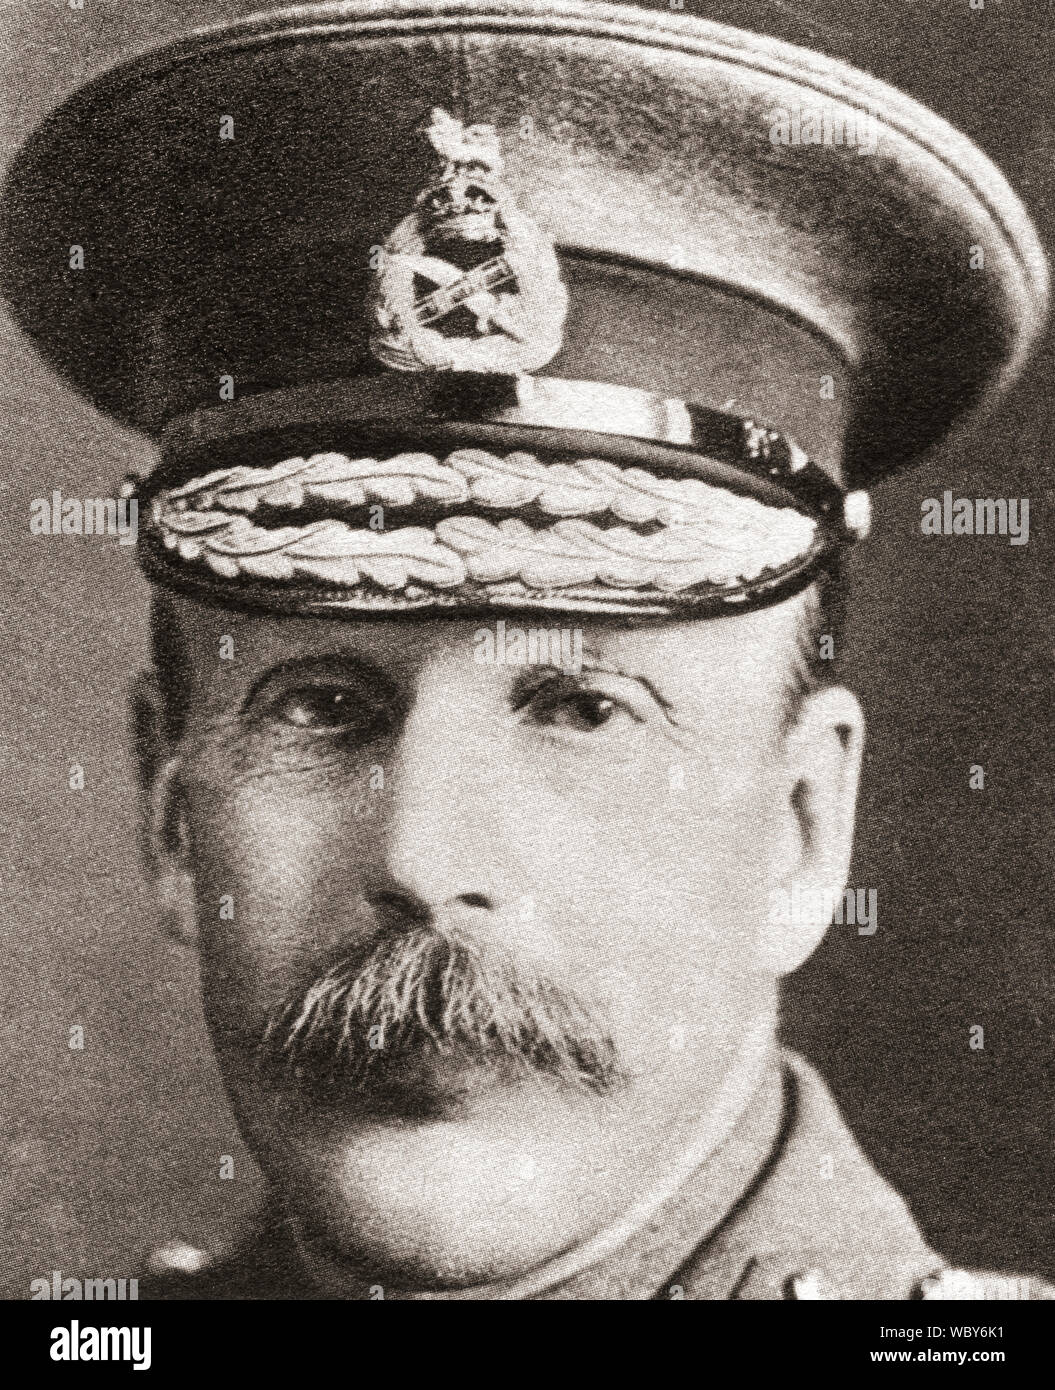 Le Lieutenant-général Sir Frederick Stanley Maude, 1864 -1917. Le commandant britannique de la Première Guerre mondiale, au cours de la cérémonie du siècle, publié en 1934. Banque D'Images